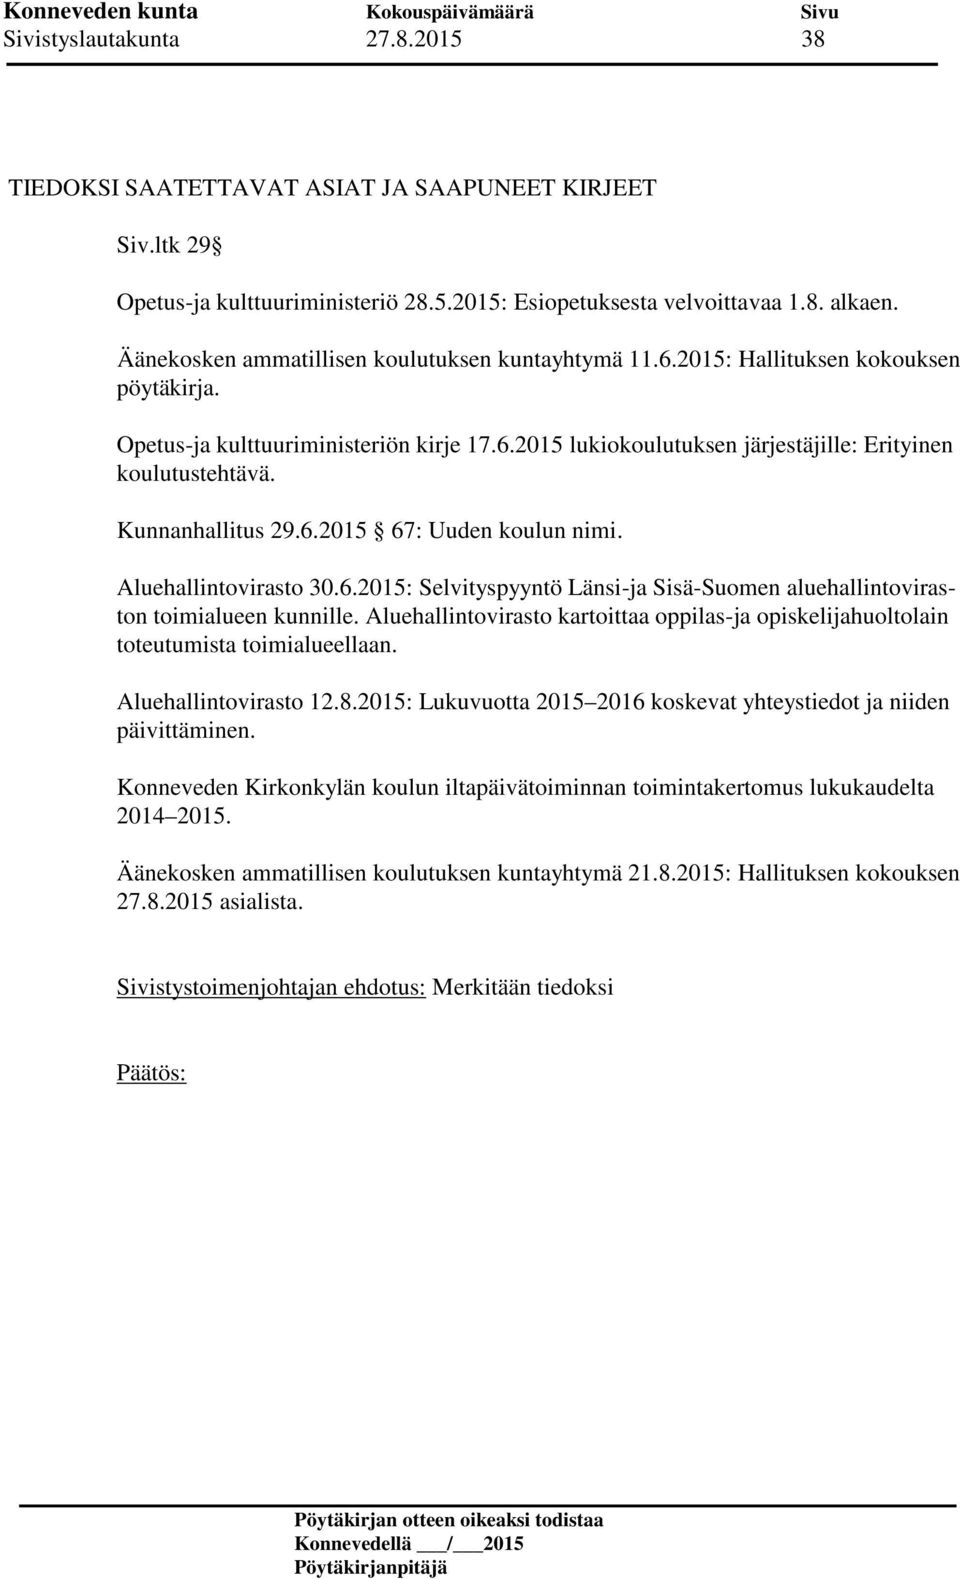 Kunnanhallitus 29.6.2015 67: Uuden koulun nimi. Aluehallintovirasto 30.6.2015: Selvityspyyntö Länsi-ja Sisä-Suomen aluehallintoviraston toimialueen kunnille.